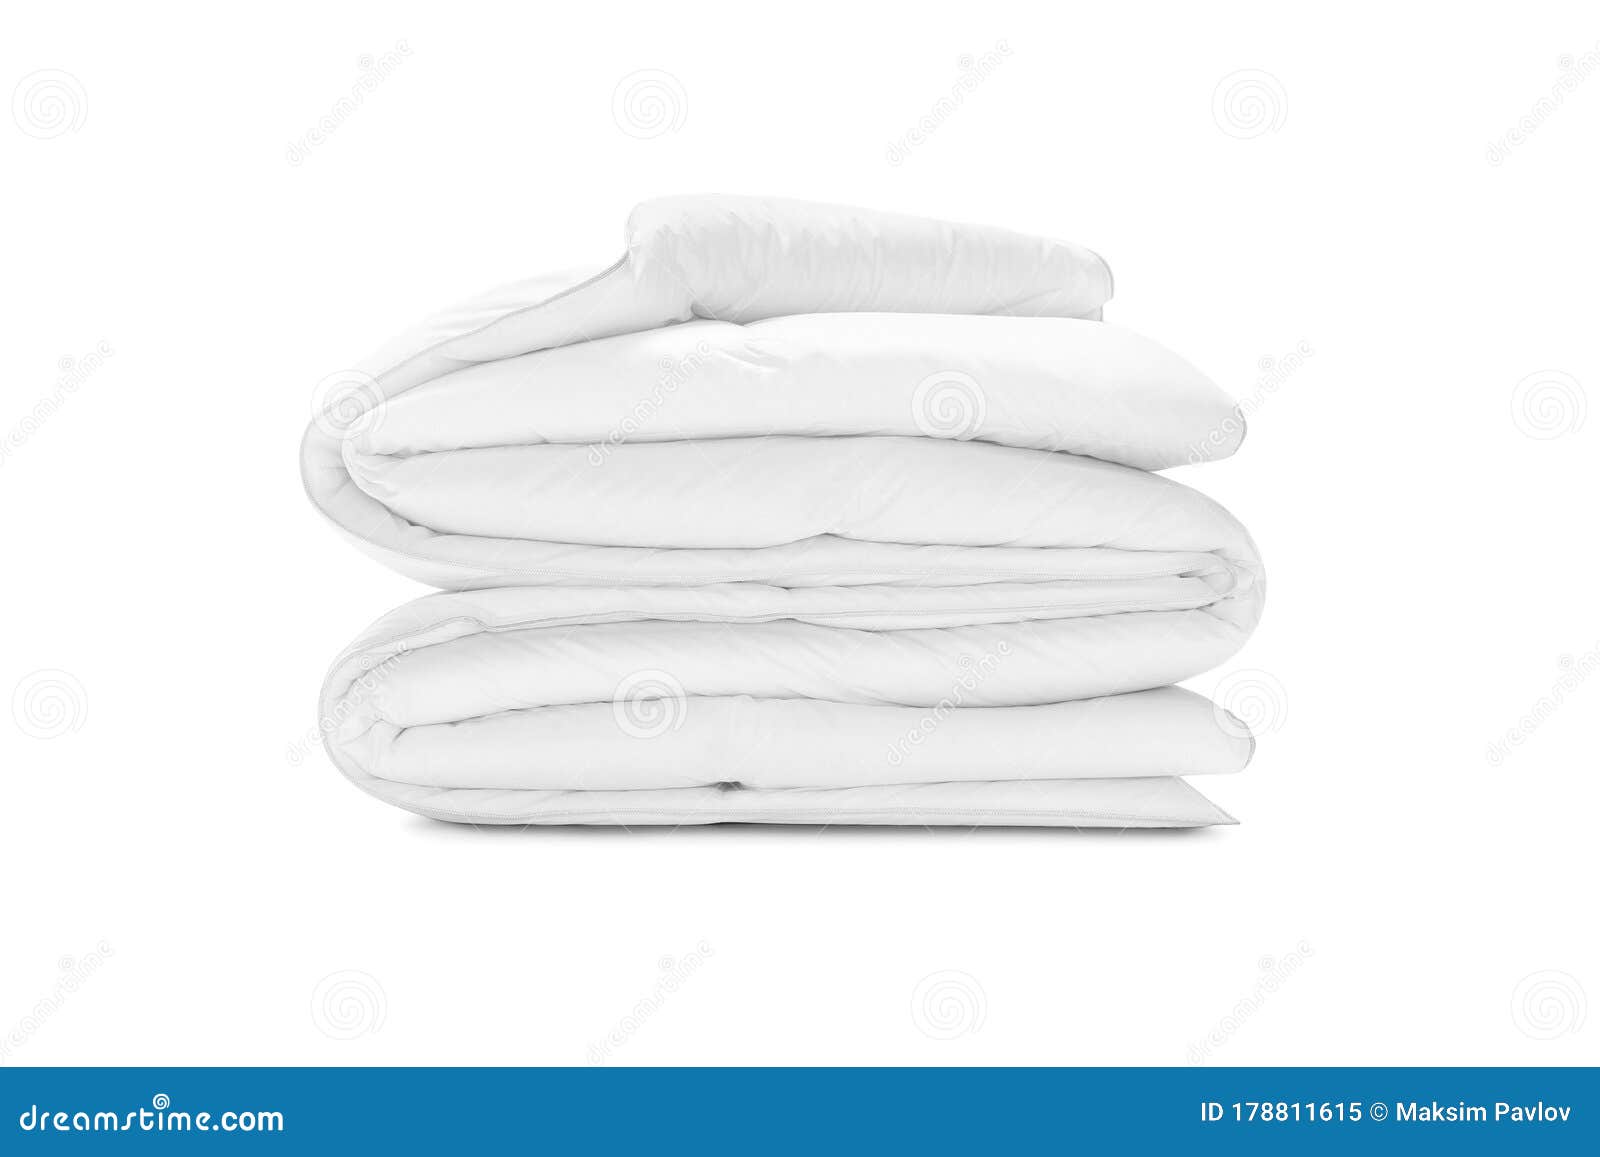 Включи белый мягкий. Сложенное одеяло 3d модель. 3d модель одеяло свернутое. Сложенное покрывало 3d модель. Одеяло на белом фоне не сложенное.